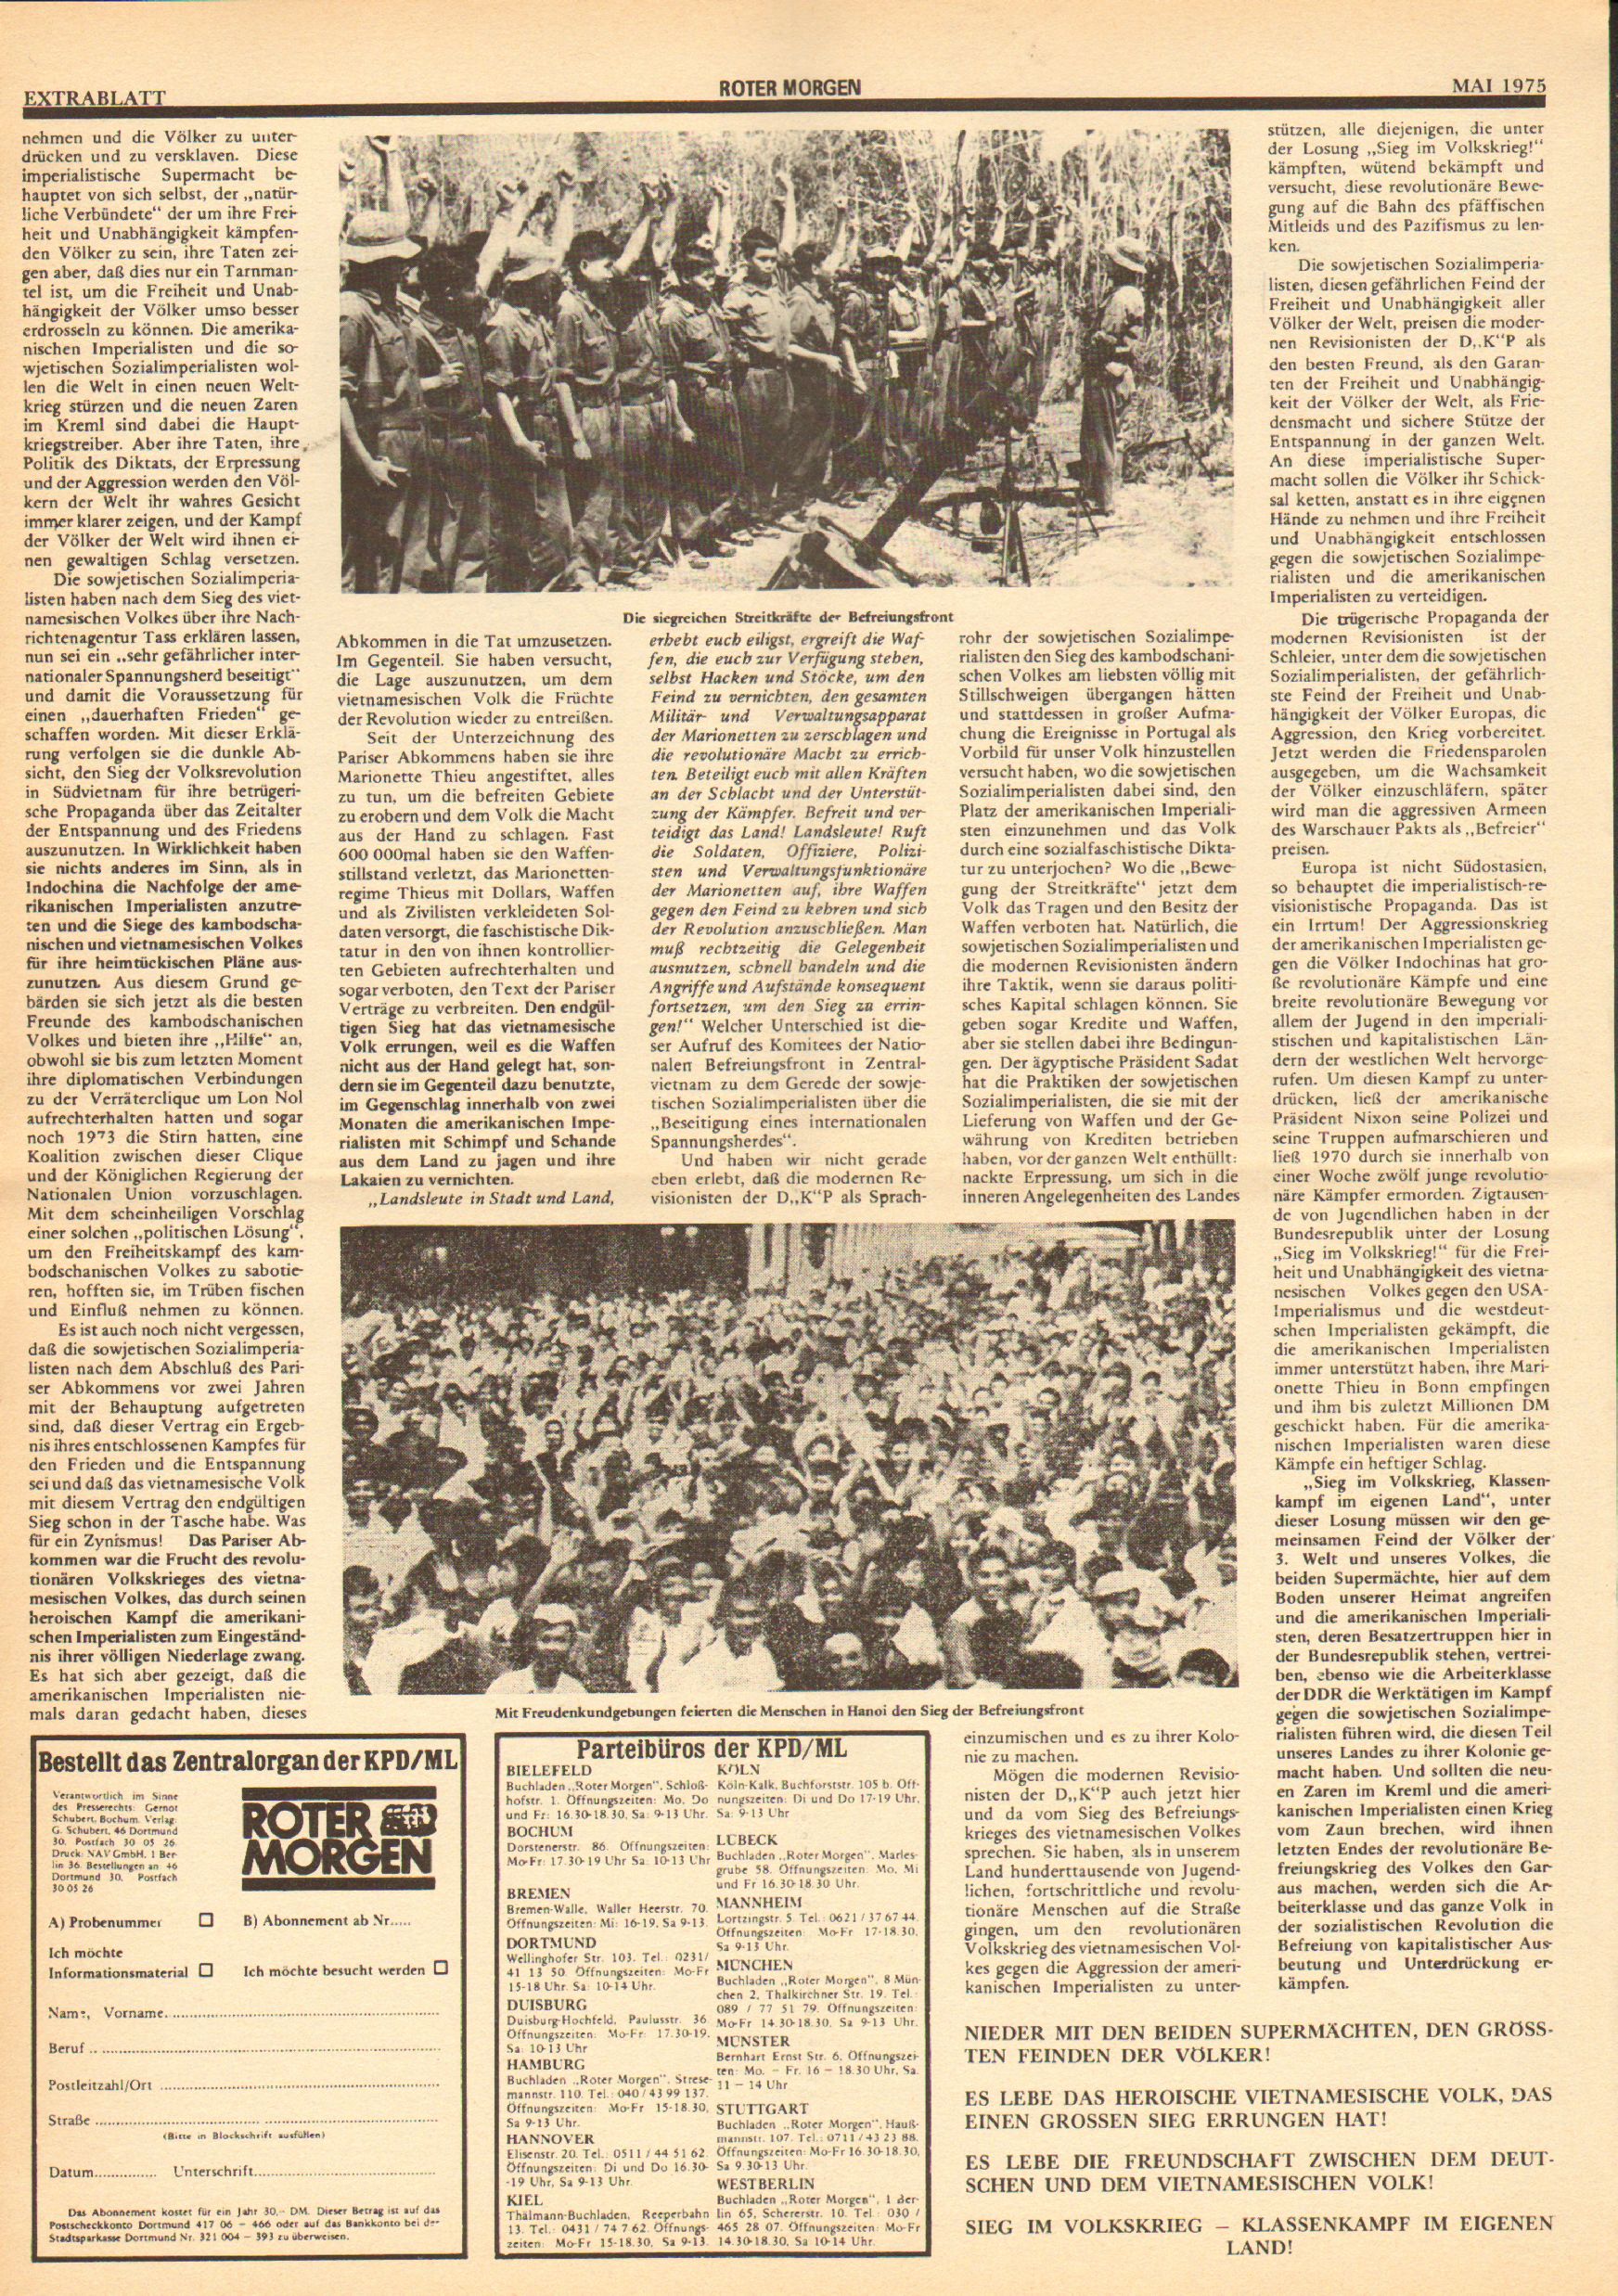 Roter Morgen, 9. Jg., Mai 1975, Extrablatt, Seite 2